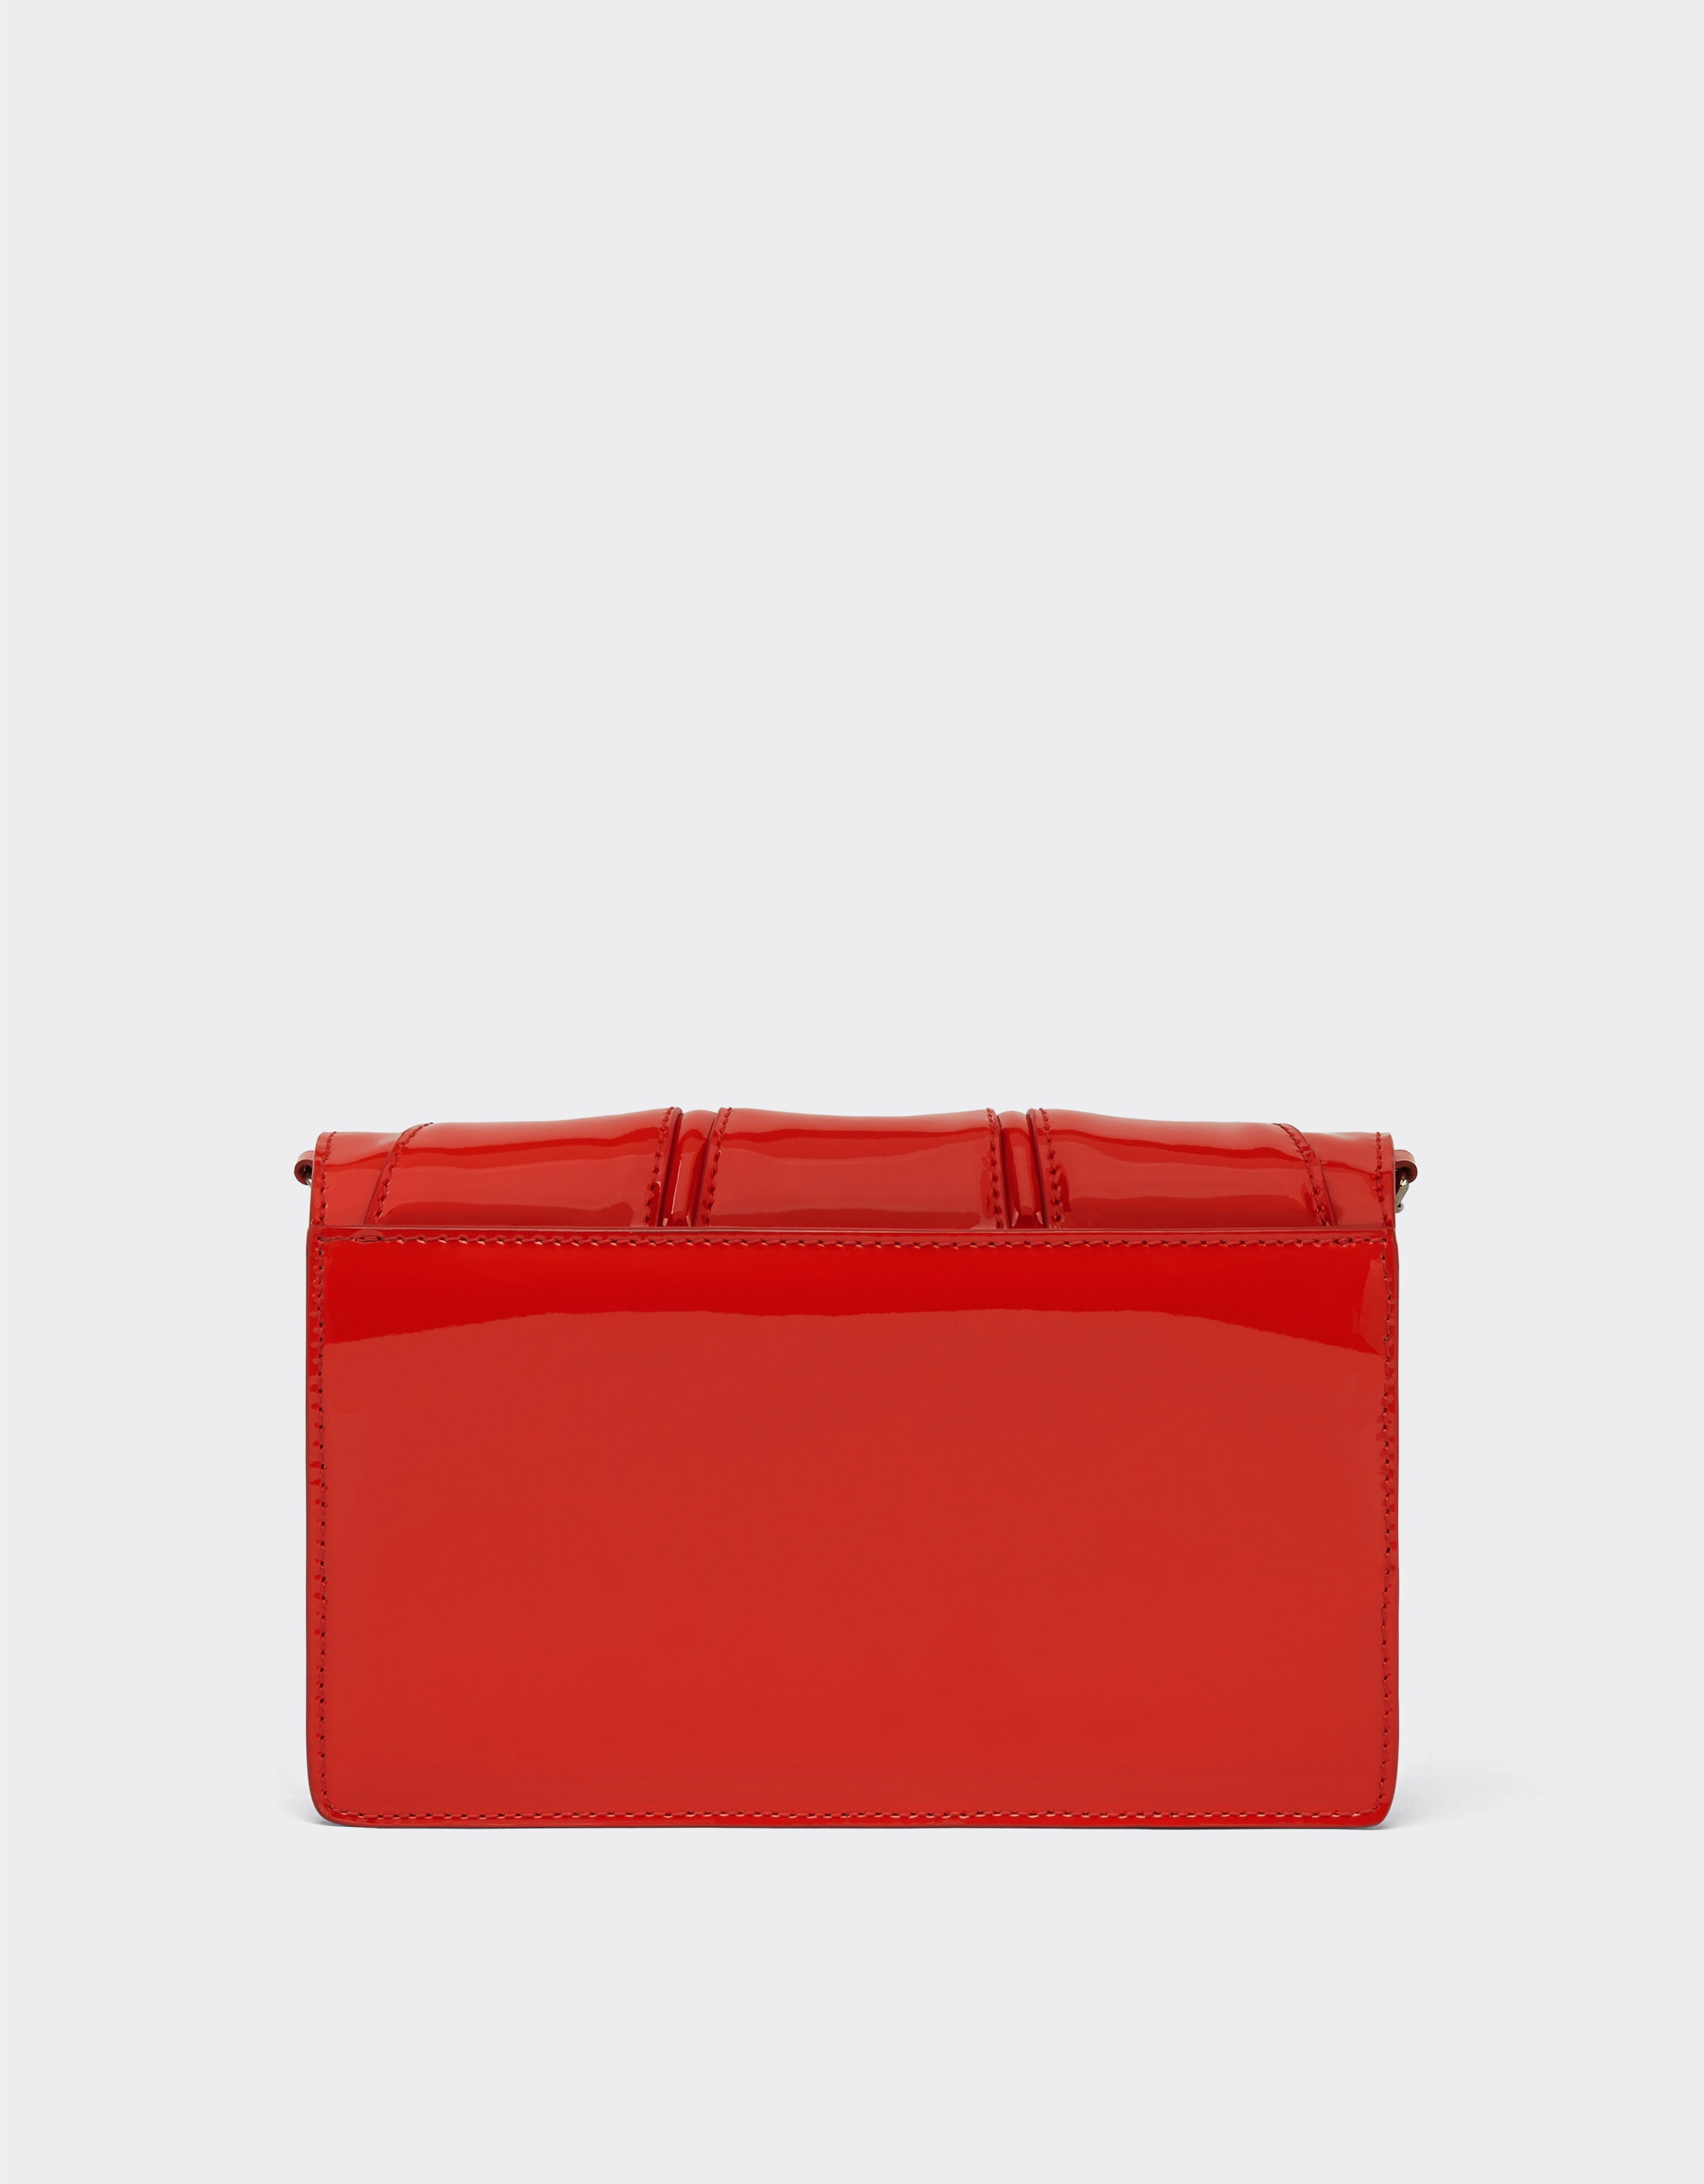 Ferrari 法拉利 GT 链饰漆皮手袋 Rosso Dino 红色 20238f